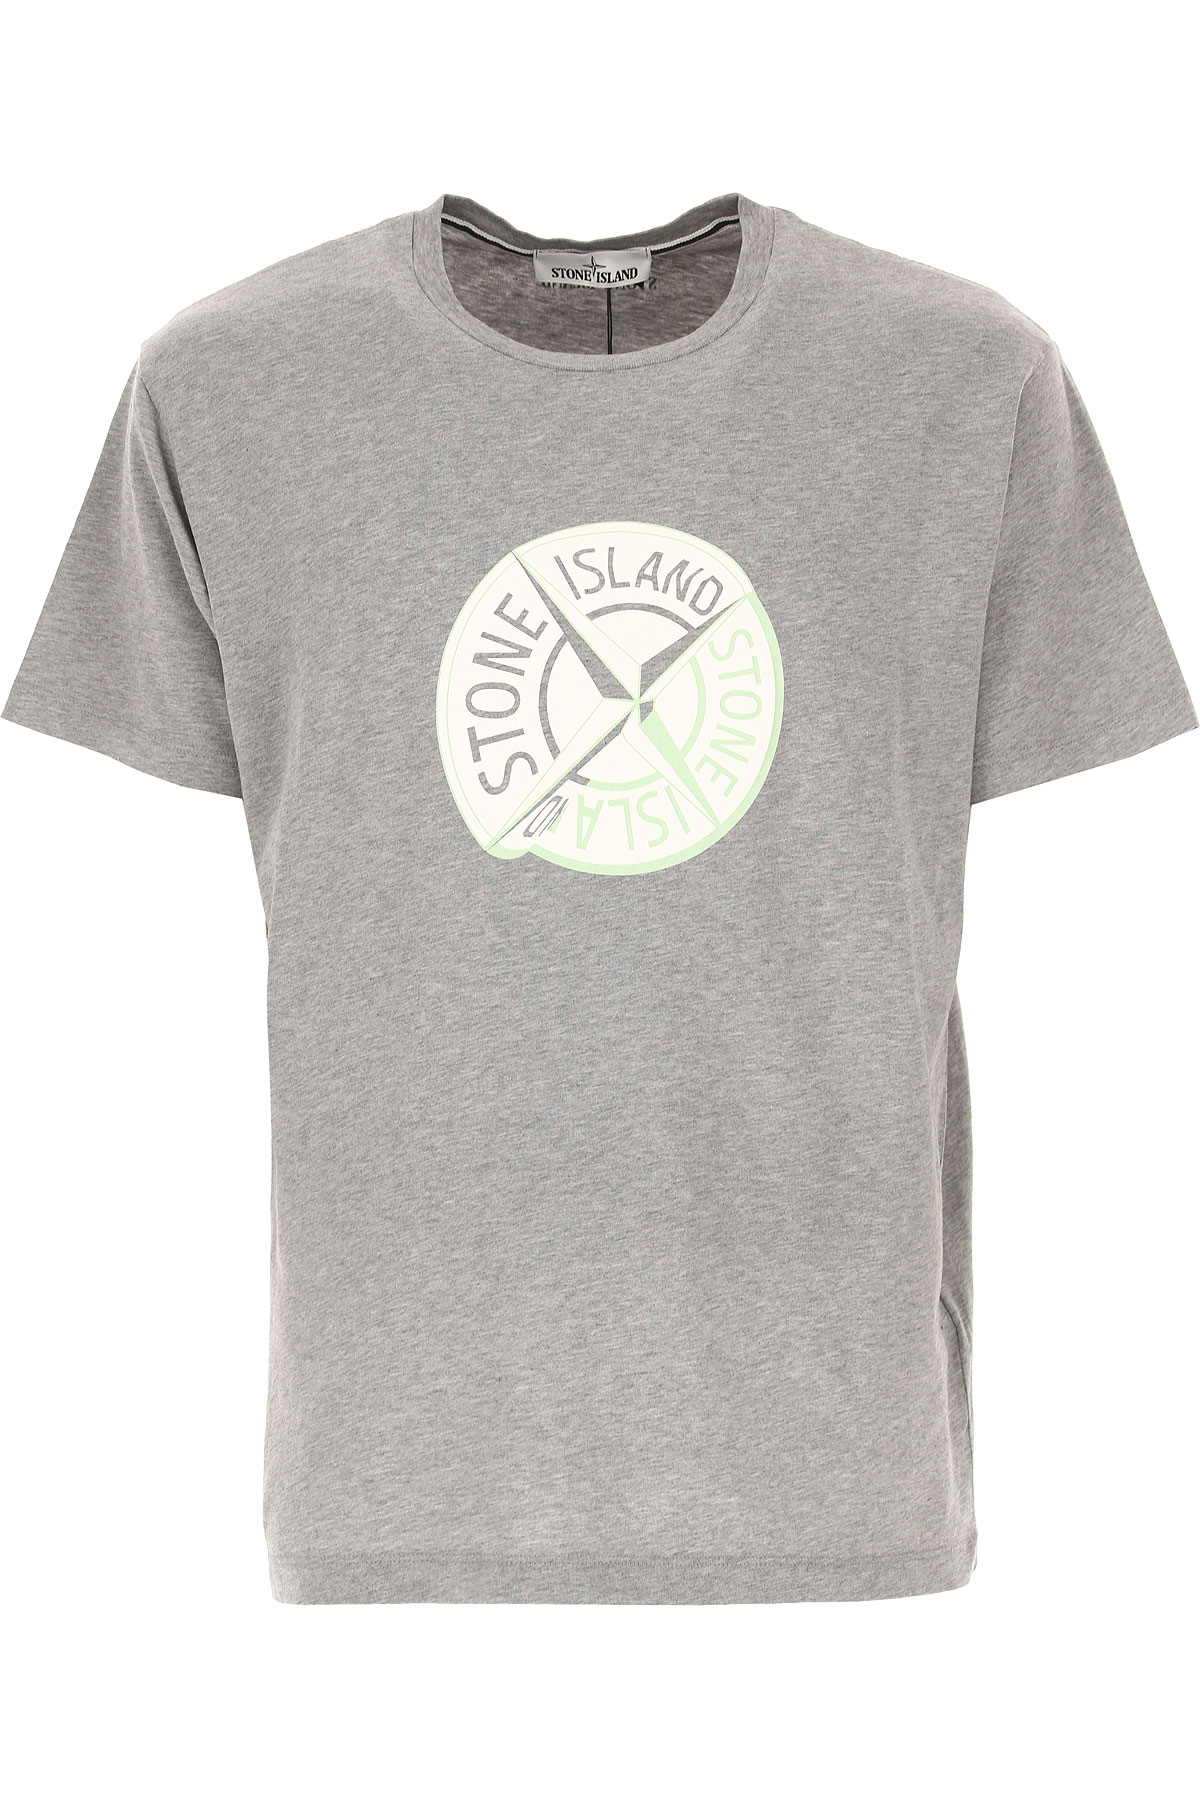 Stone Island T-shirt Homme, Gris, Coton, 2017, L M S XL